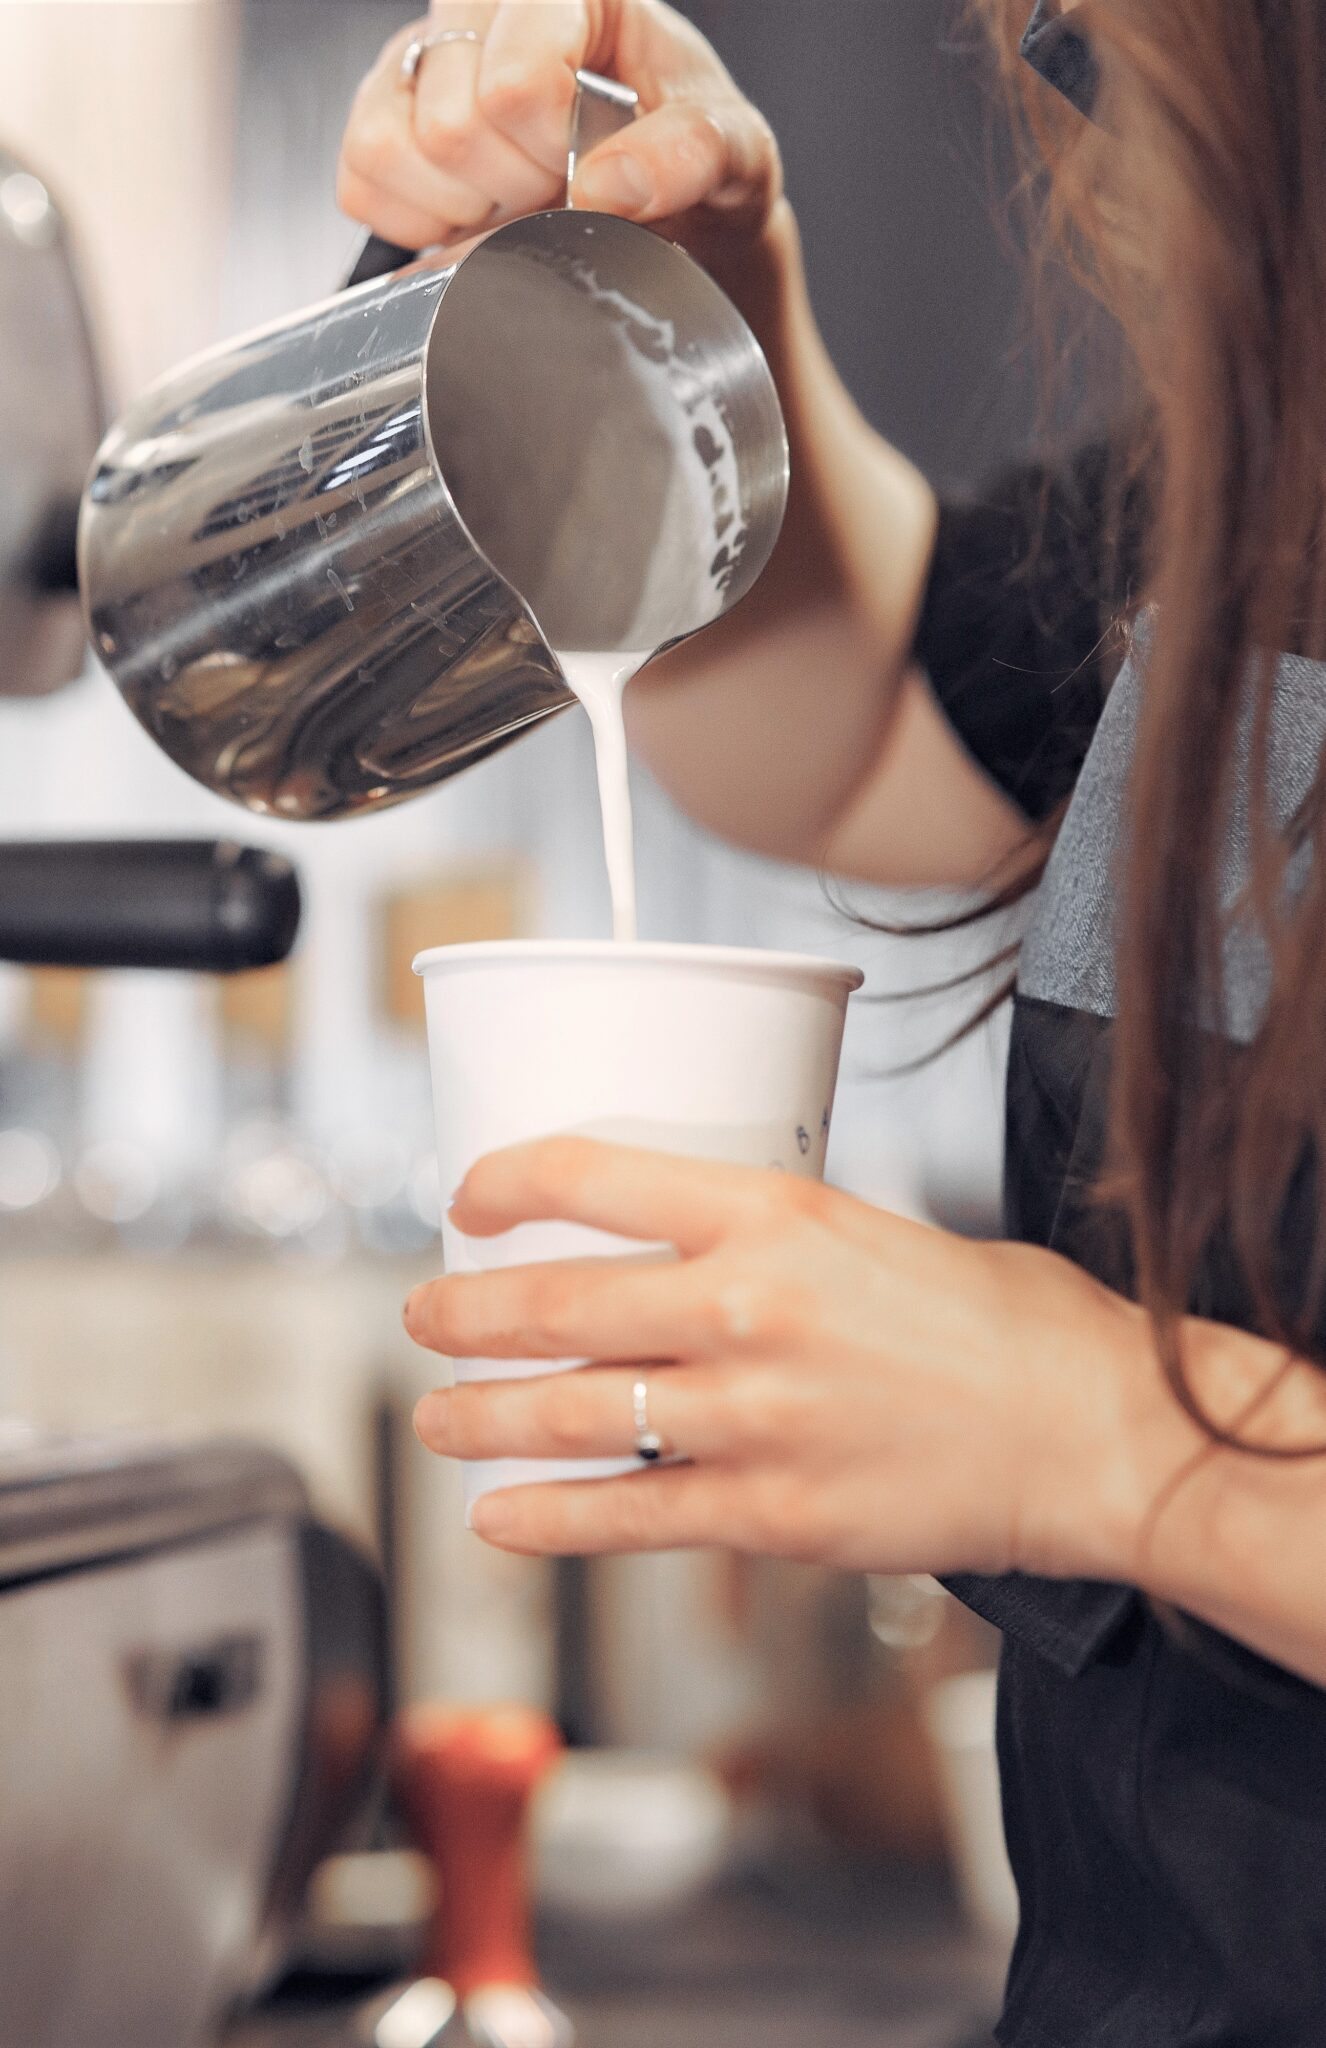 How To Make Starbucks Caffe Latte